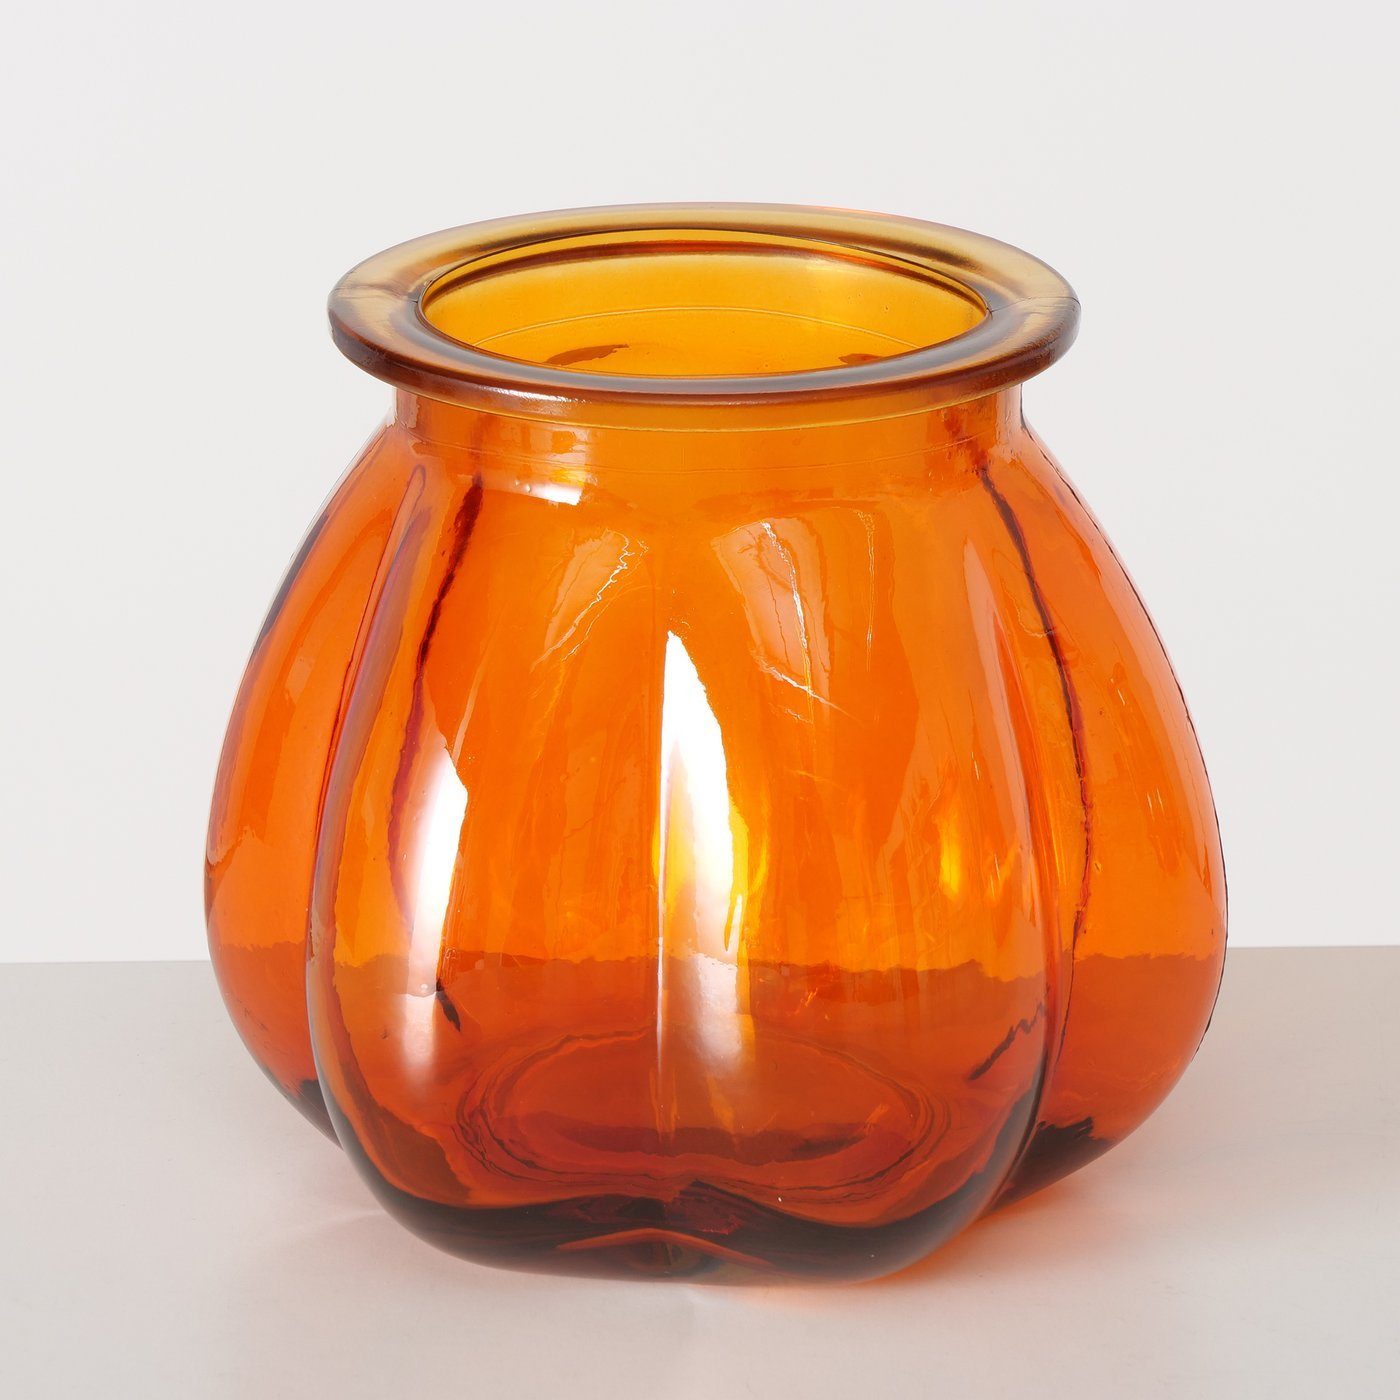 BOLTZE Dekovase Set "Tangerine" 2er in Blumenvase Vase Glas gelb/orange, aus